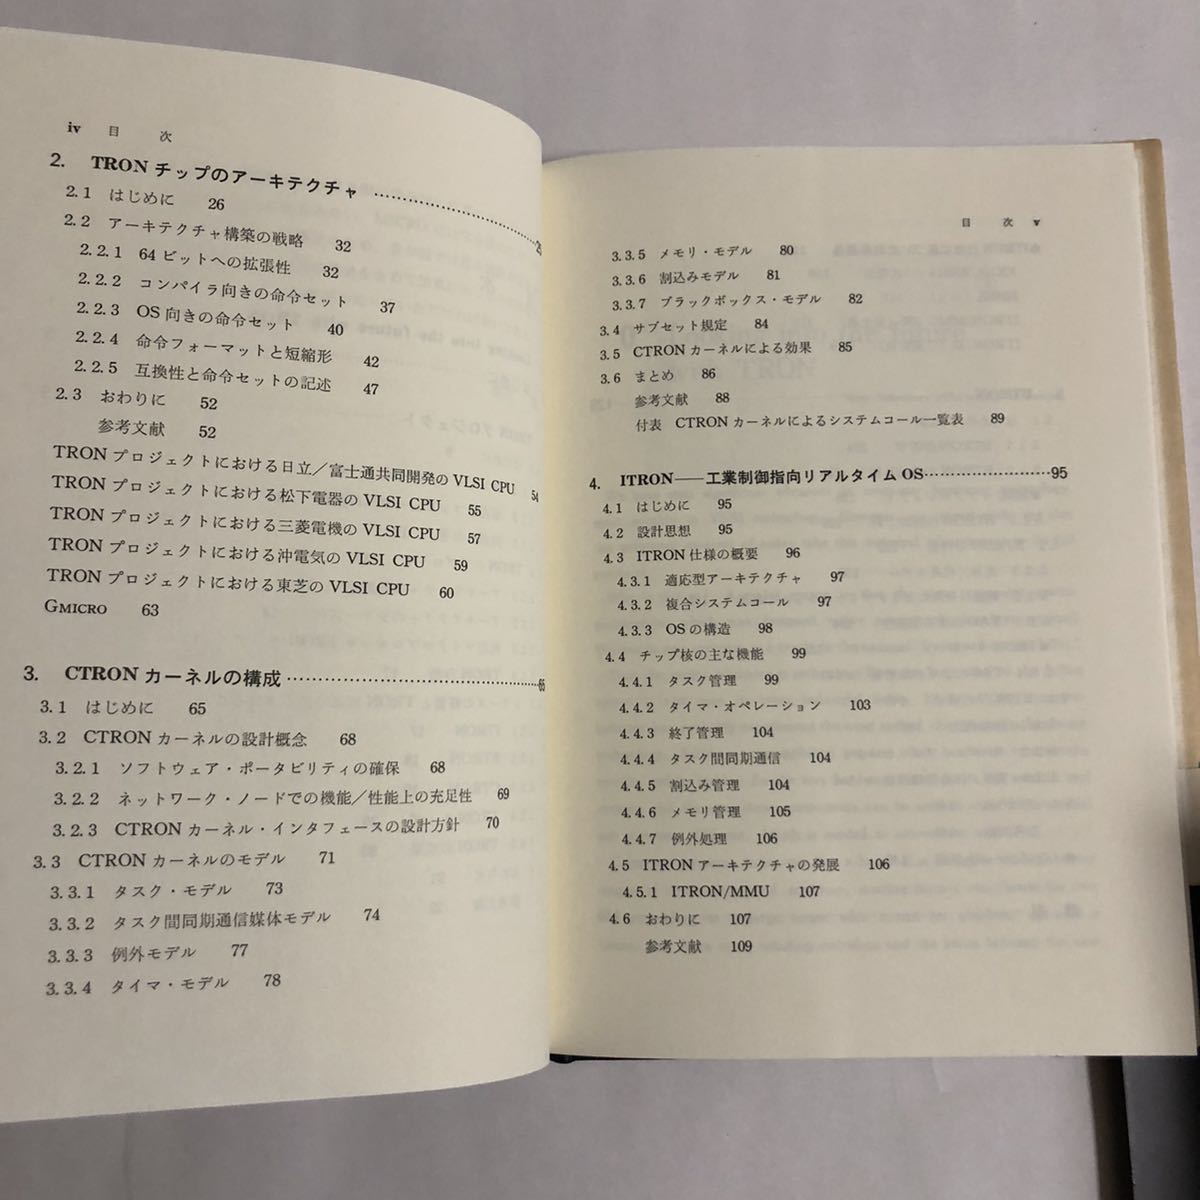 * TRON. теория склон ..1988 год первая версия объединенный выпускать б/у книга@ Showa Retro PC персональный компьютер компьютер Project Hitachi Matsushita Mitsubishi Oki Electric Toshiba 